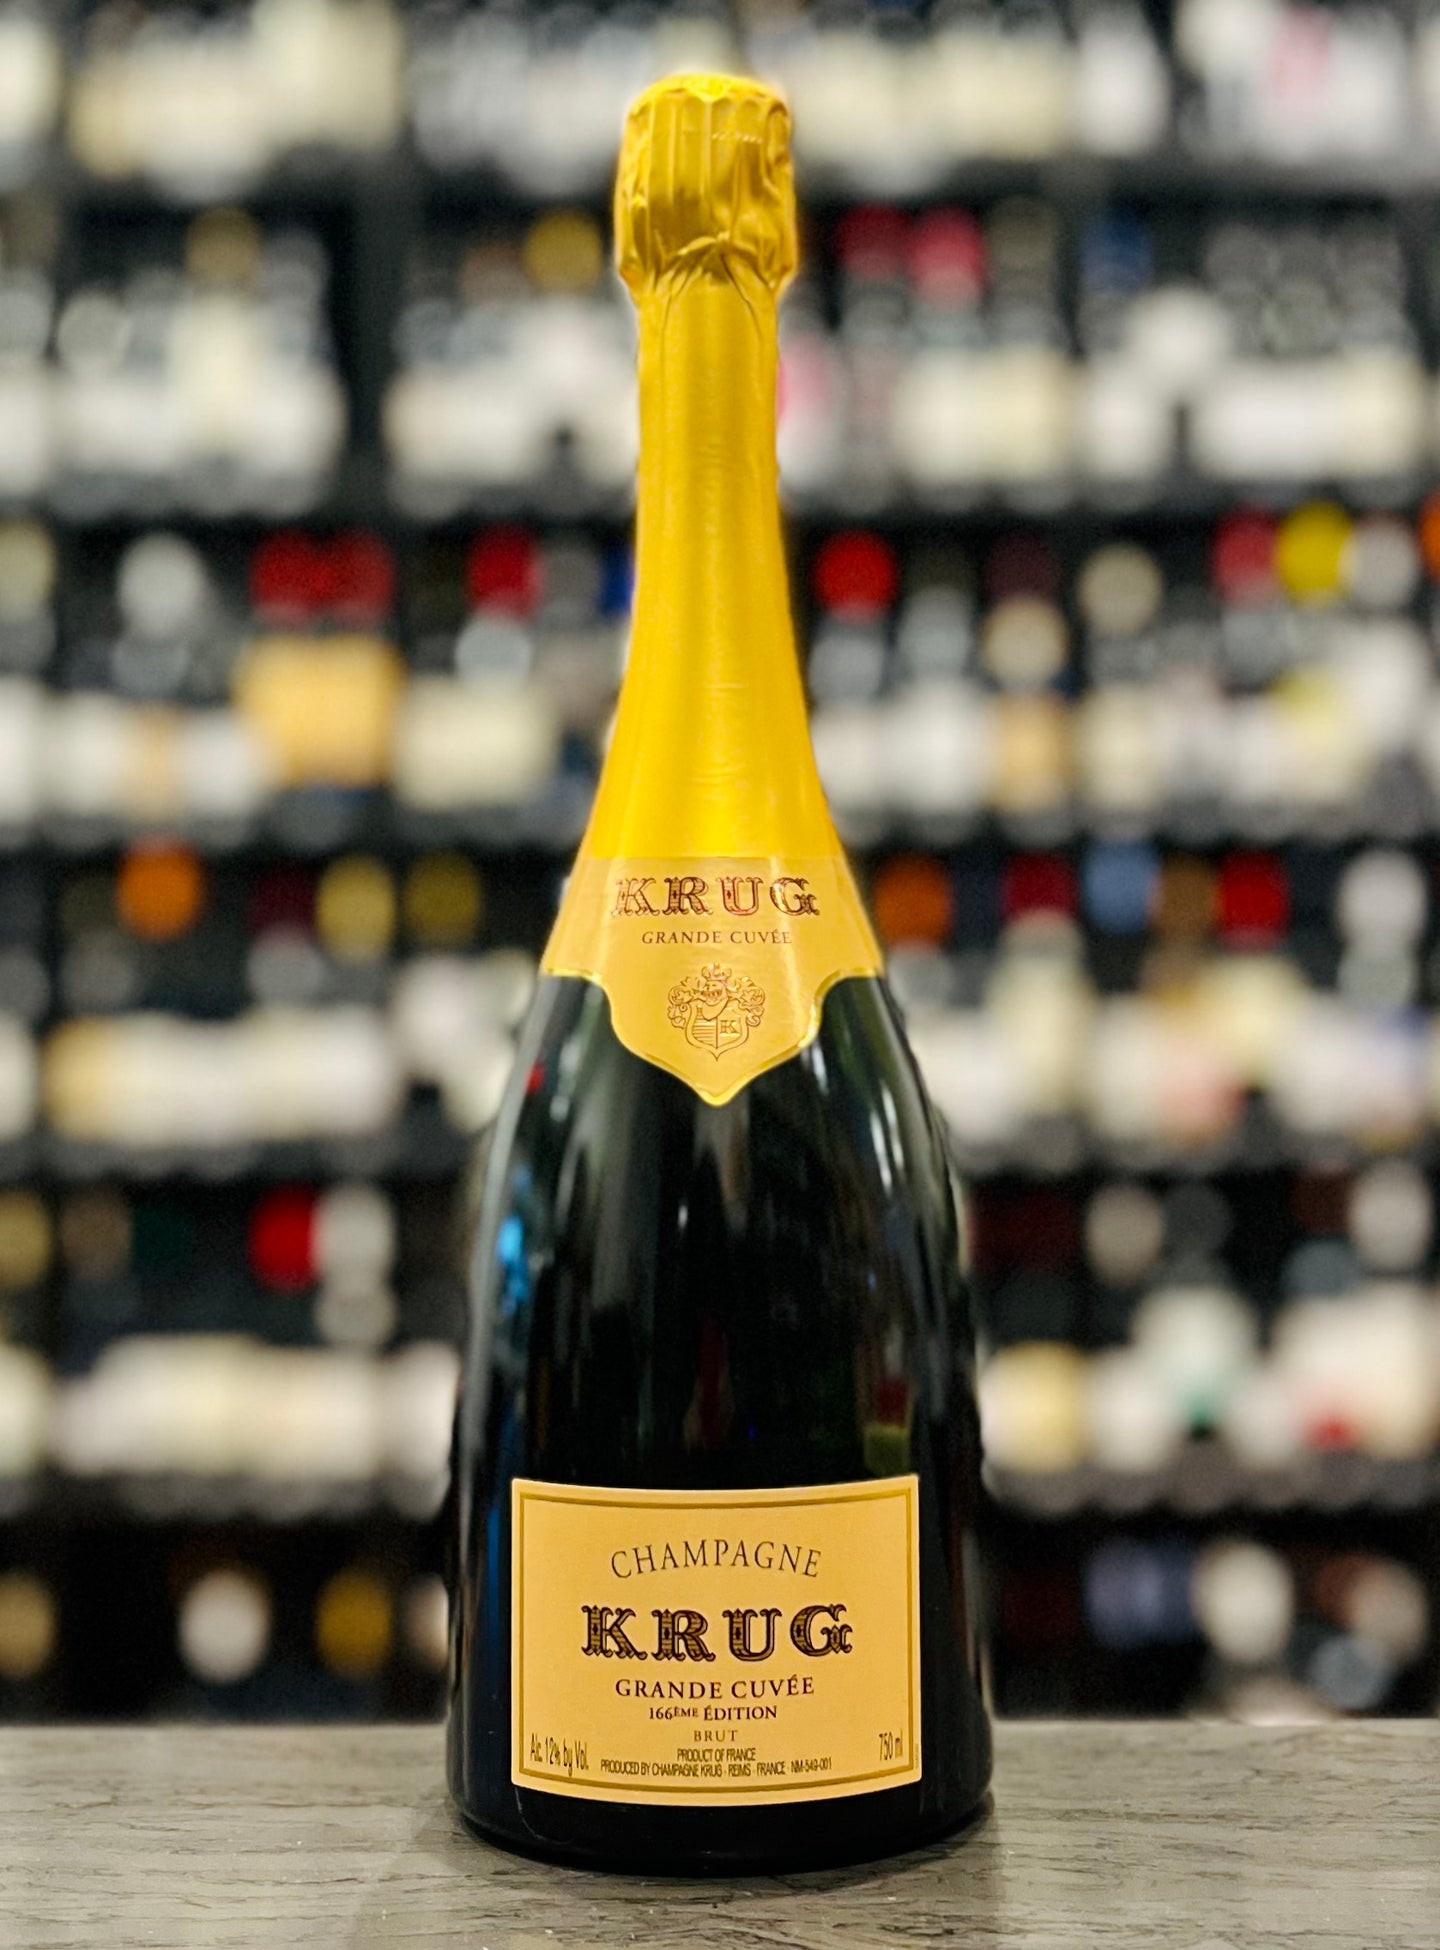 Champagne Krug, Champagne Brut Grande Cuvée 166 Éme Édition